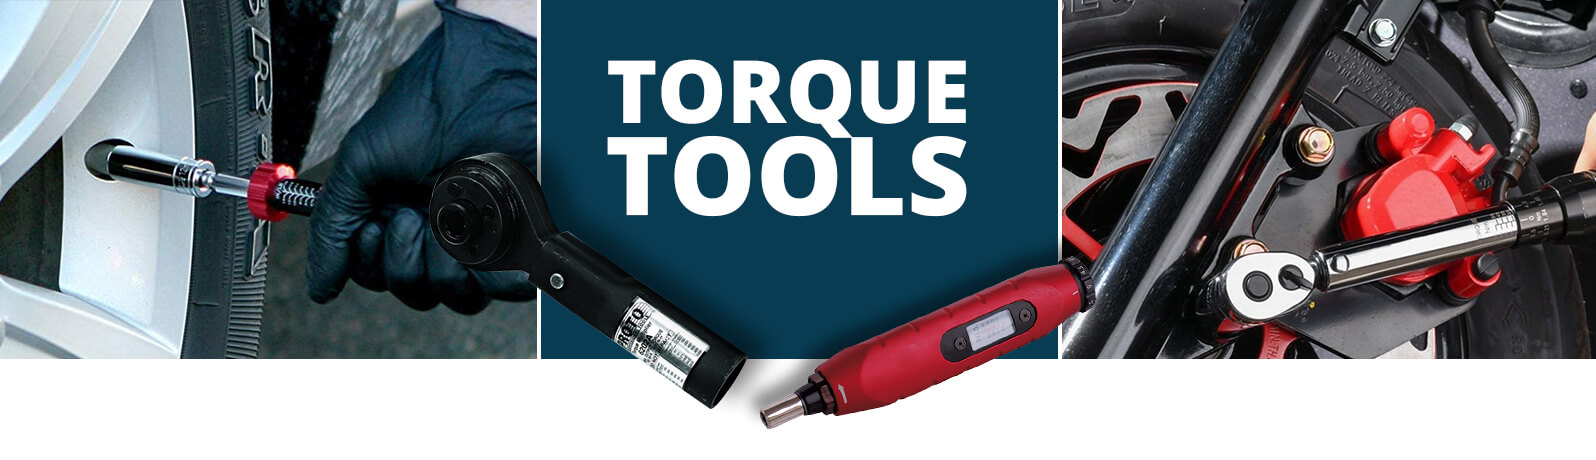 How do you use a torque tools